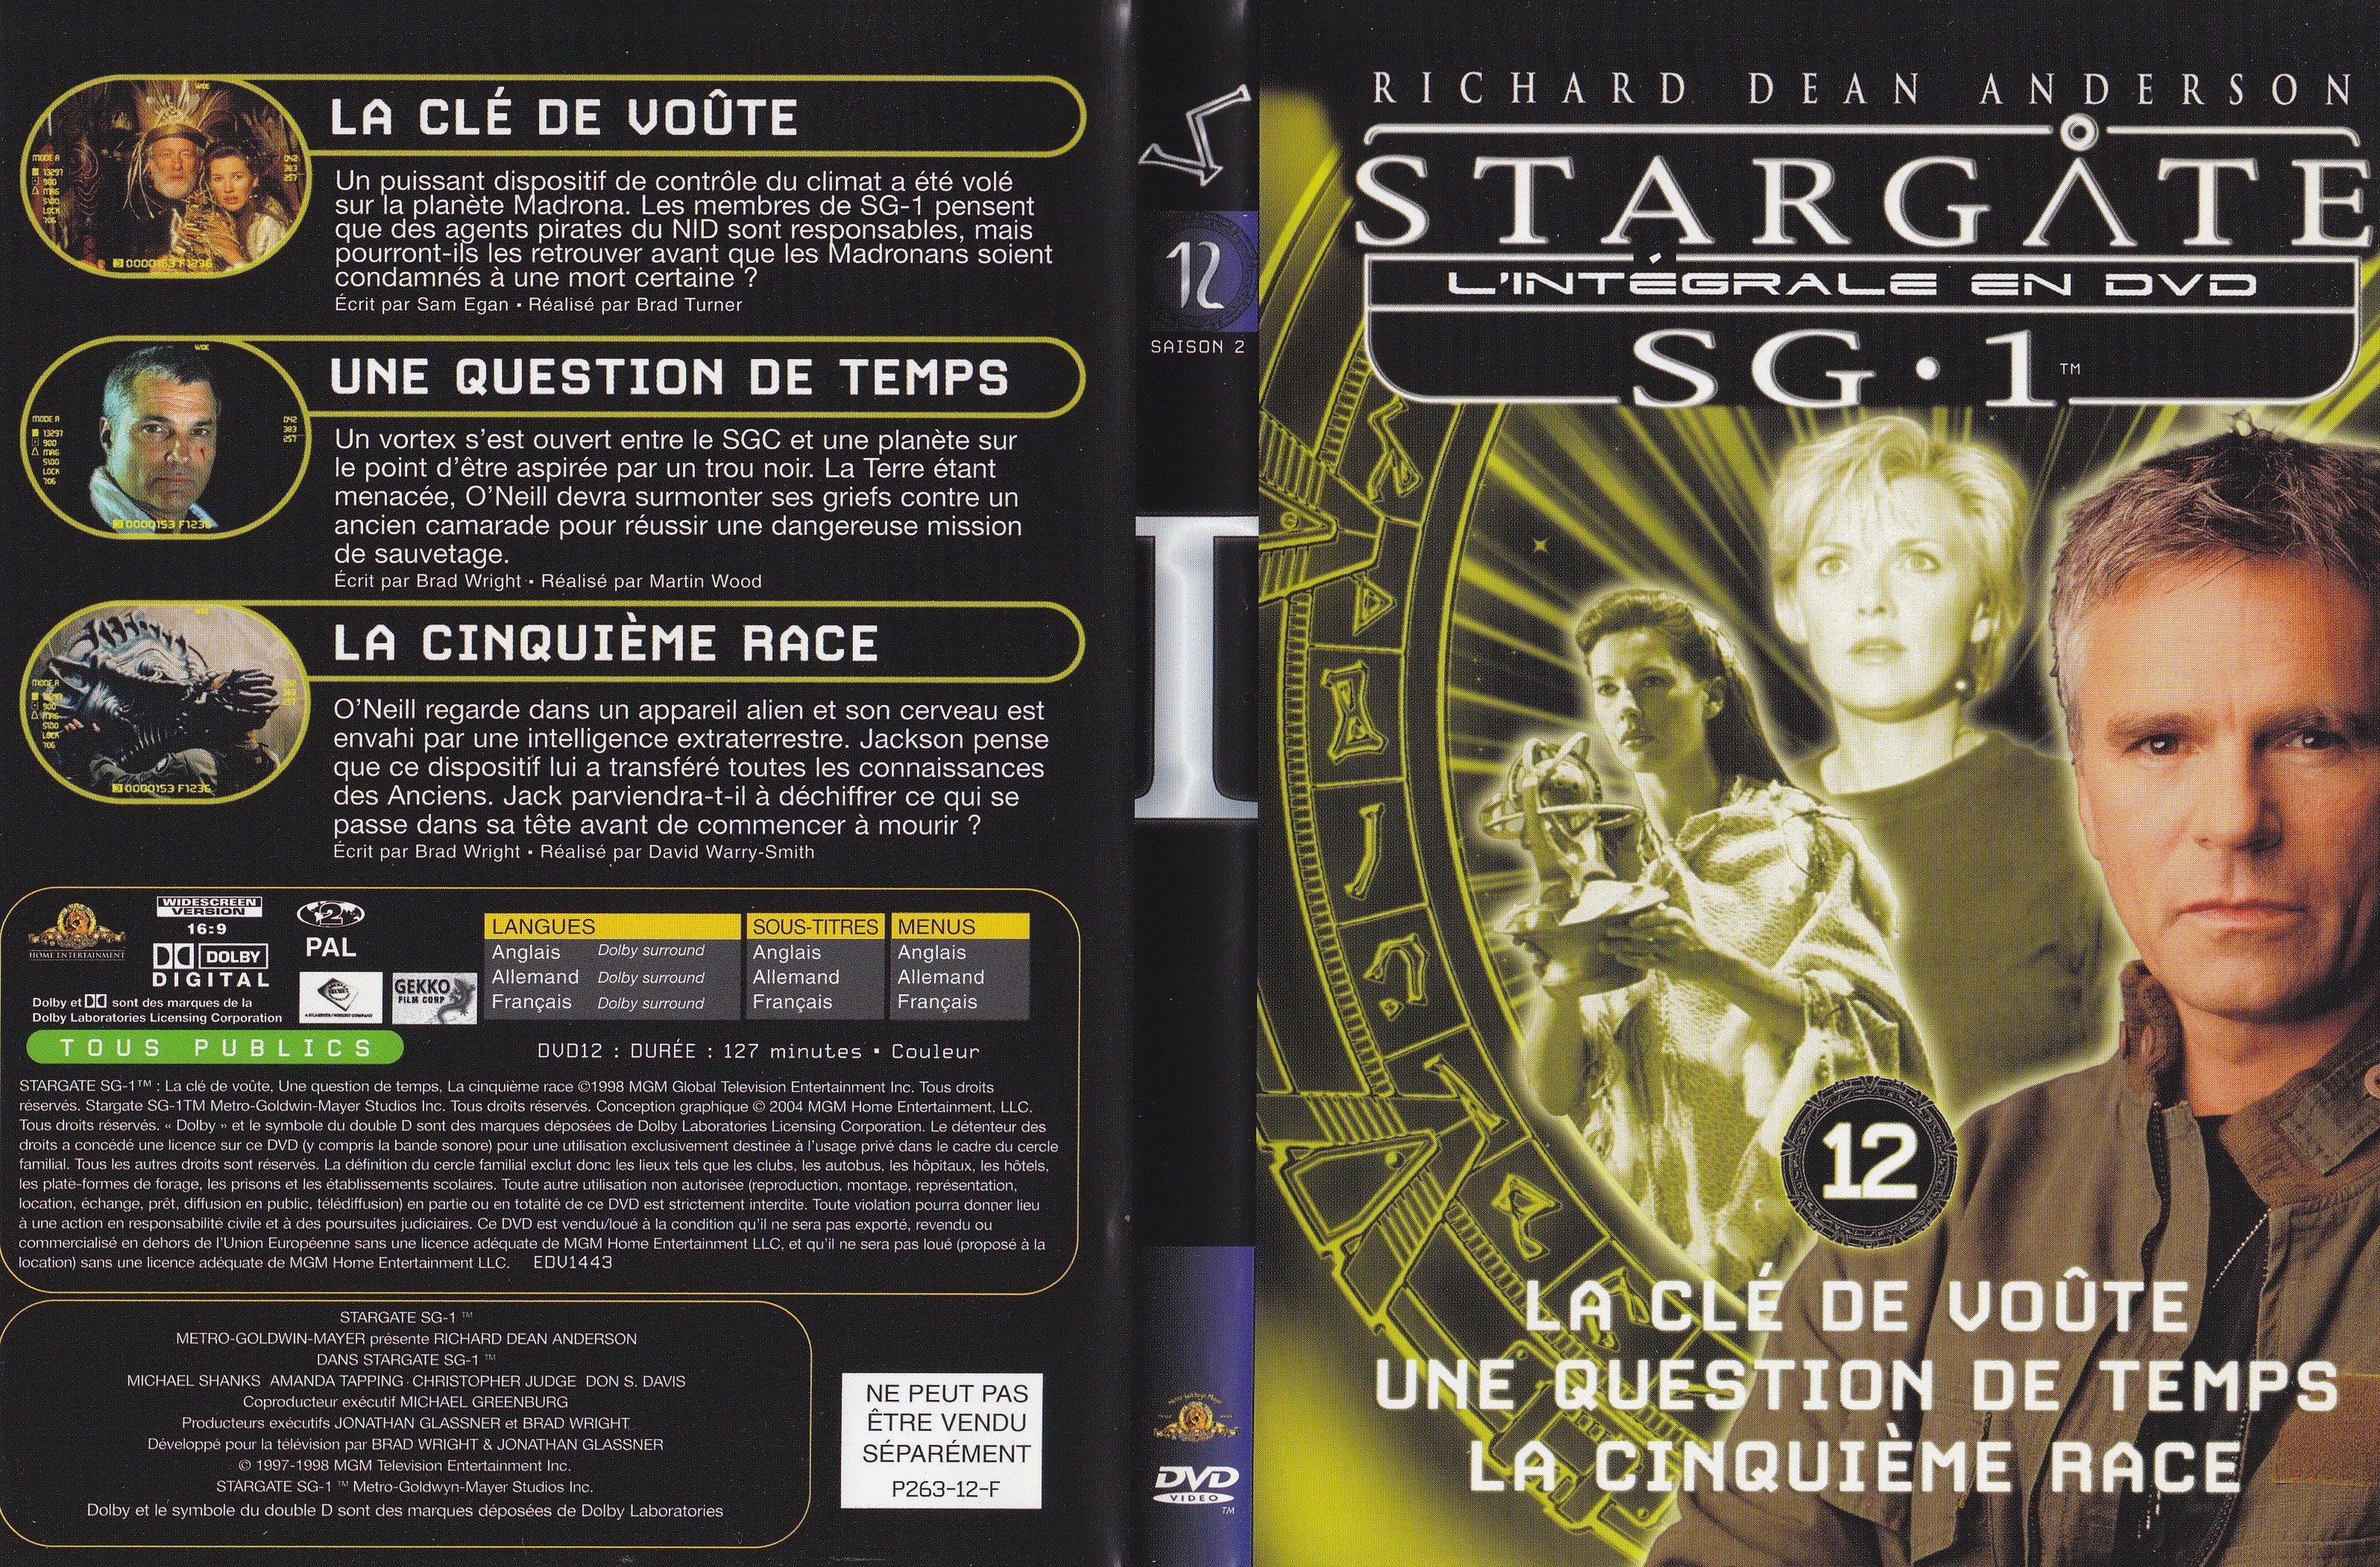 Stargate SG1 Intgrale Saison 2 vol 12